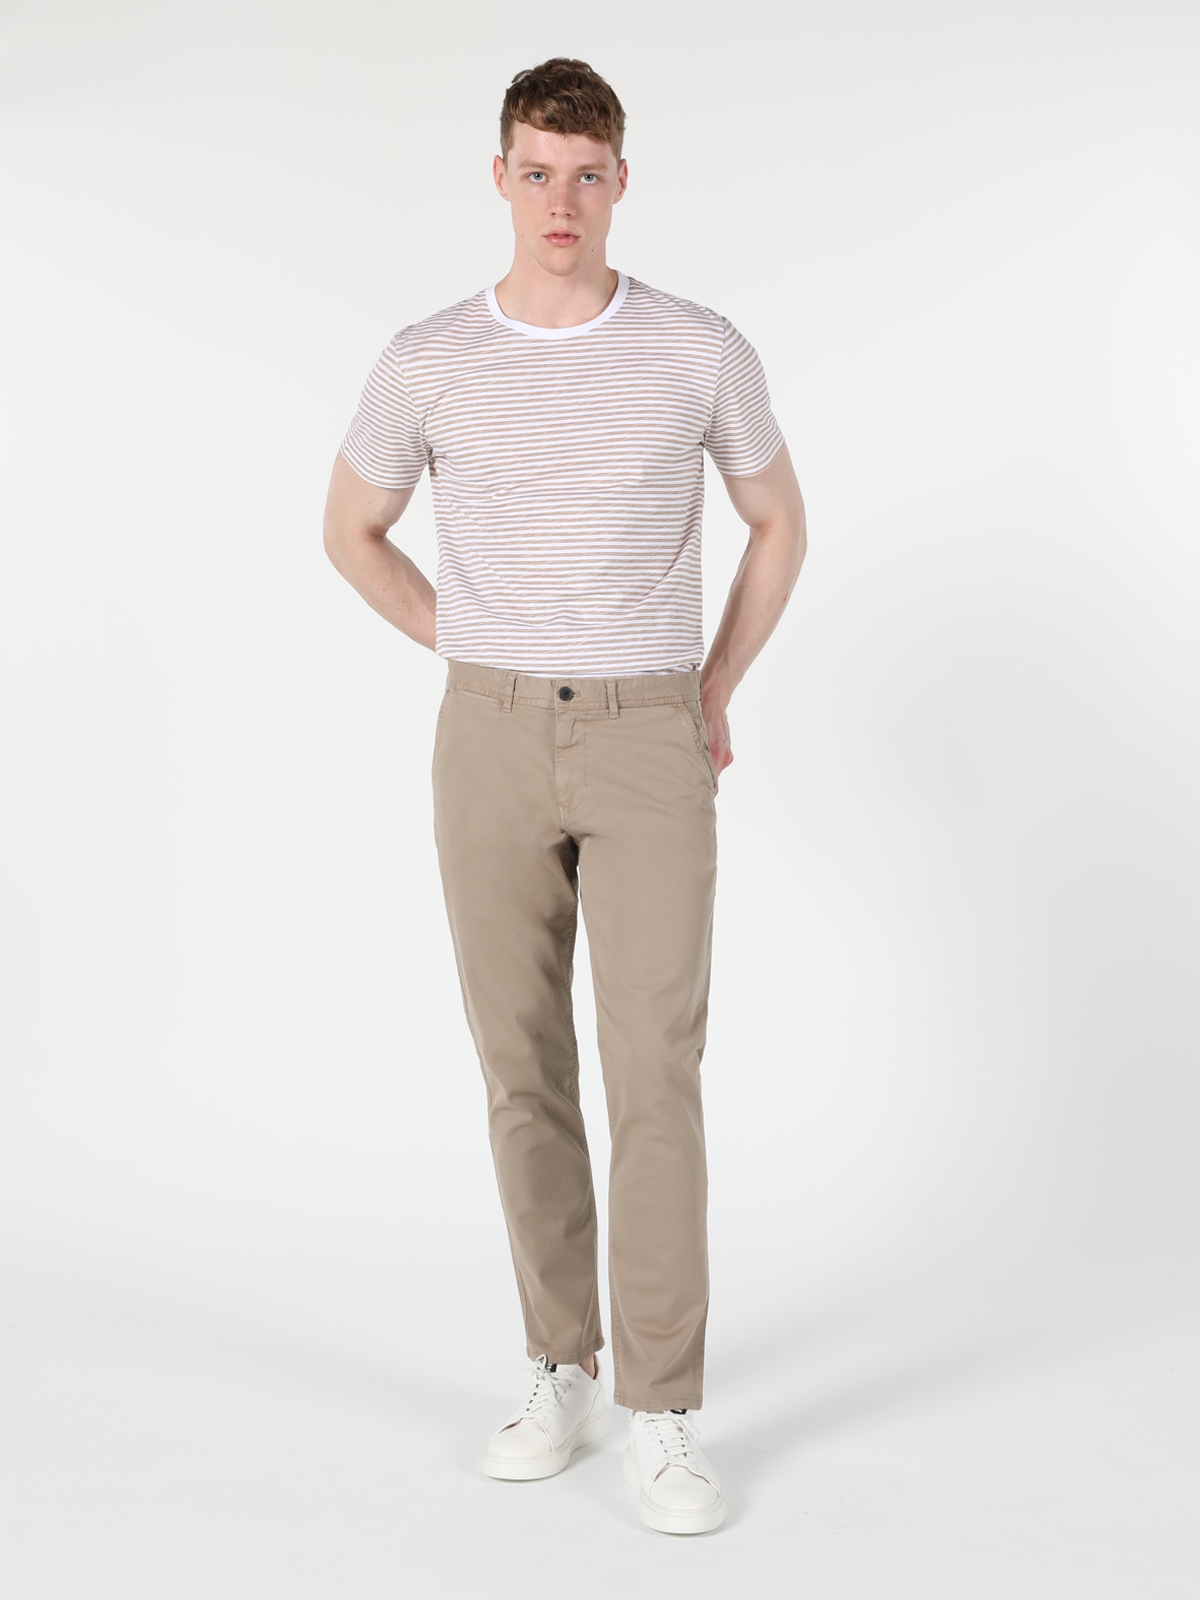 Afficher les détails de Pantalon Jaune Pour Homme, Coupe Régulière, Taille Moyenne, Jambe Droite